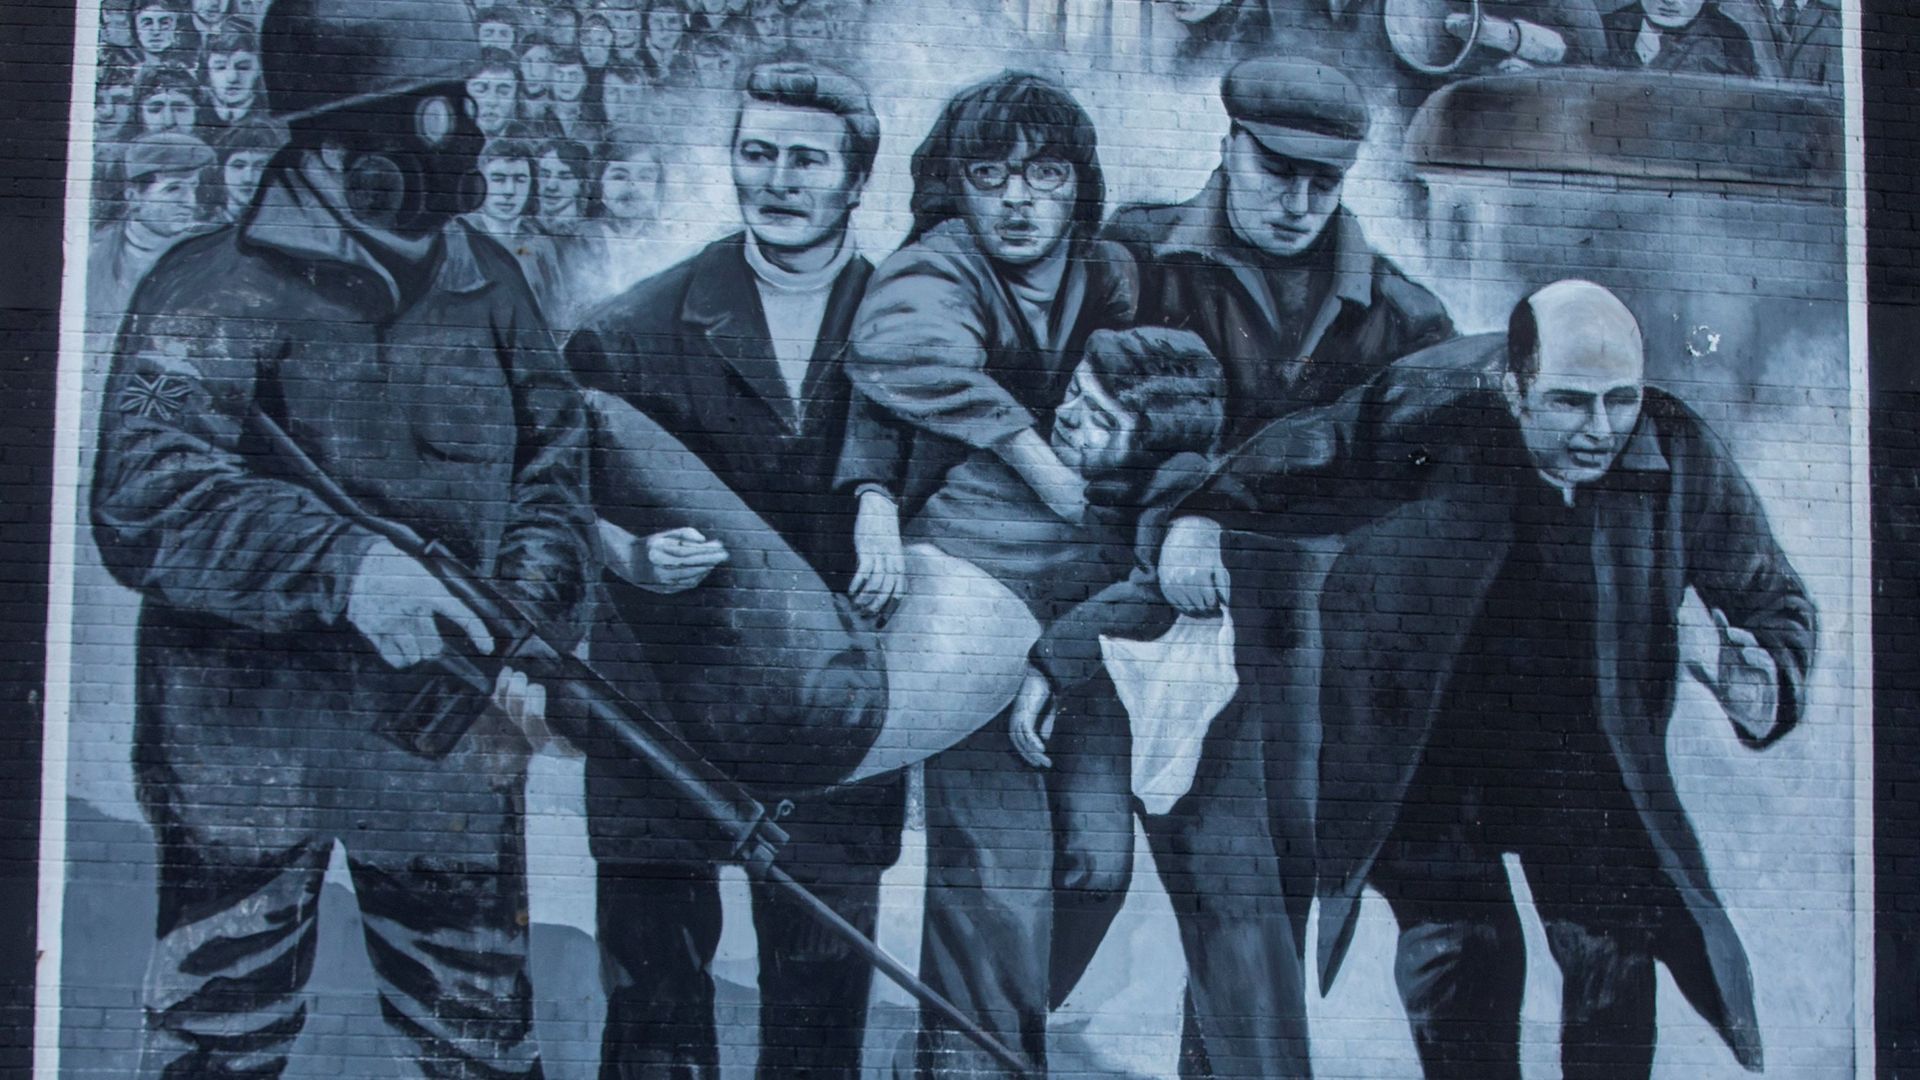 Immortalisée sur un mur du quartier de Bogside, cette scène saisie par un photographe le jour du "Bloody Sunday" montre des manifestants, dont un prêtre qui agite le mouchoir blanc, évacuer l'une des premières victimes des tirs de l'armée.